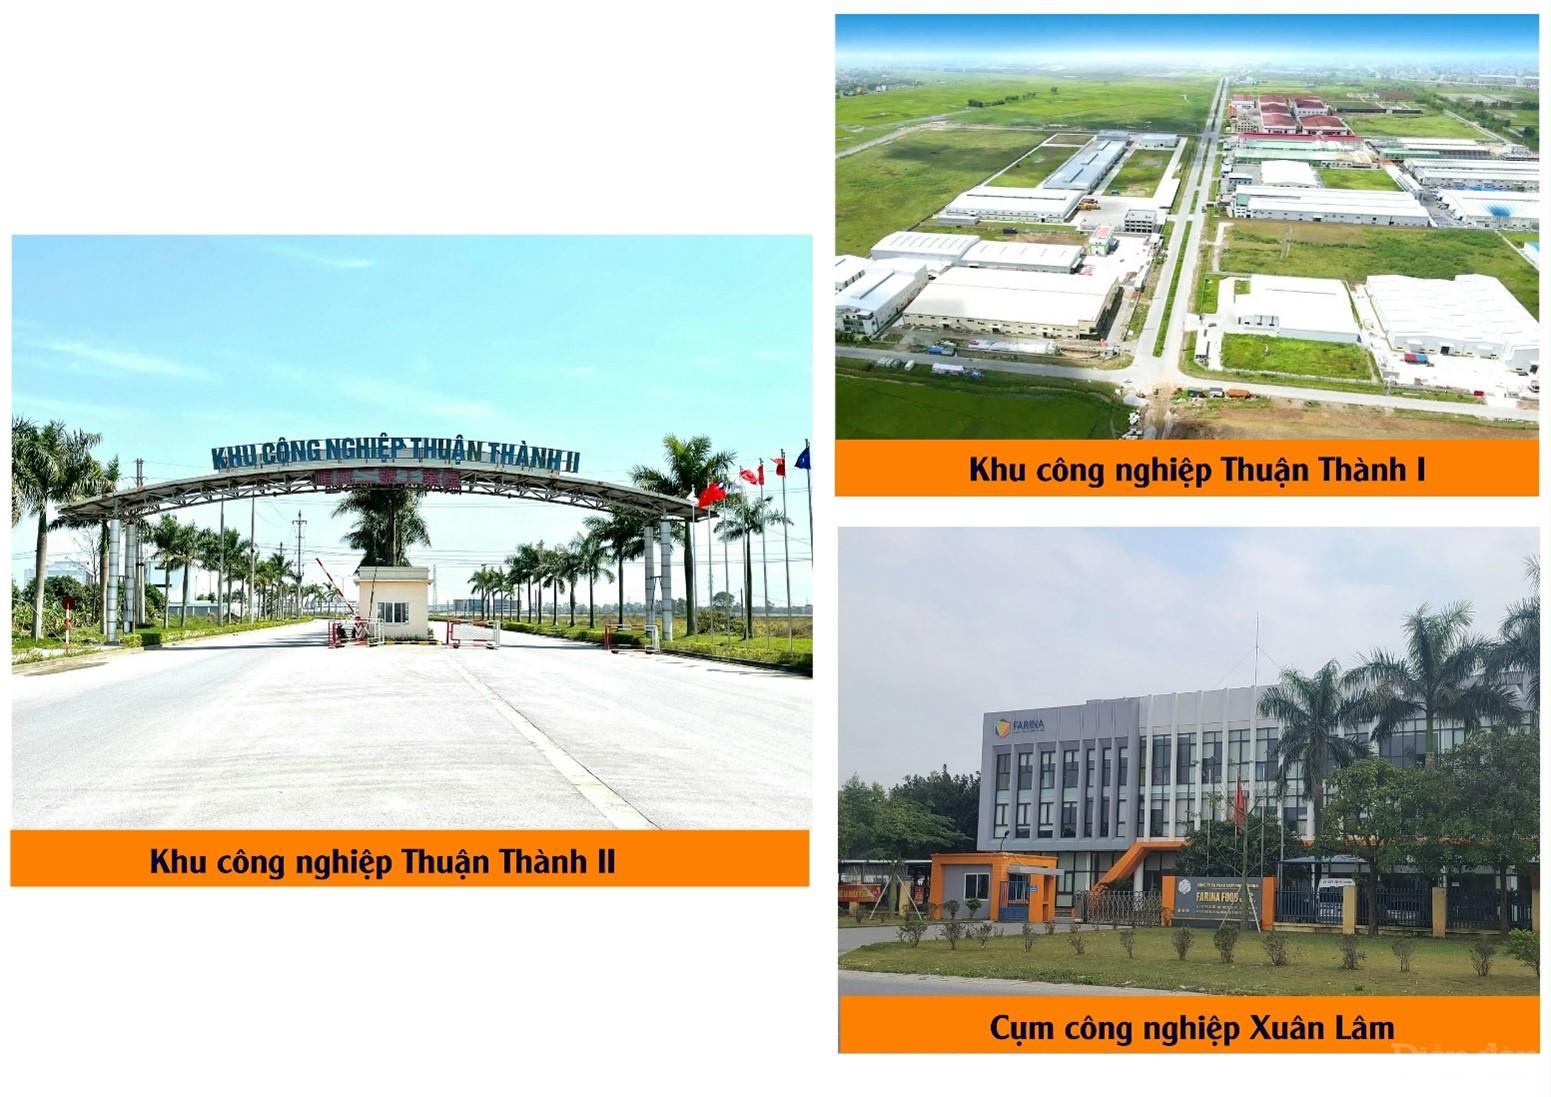 Một số khu công nghiệp trên địa bàn huyện Thuận Thành, tỉnh Bắc Ninh